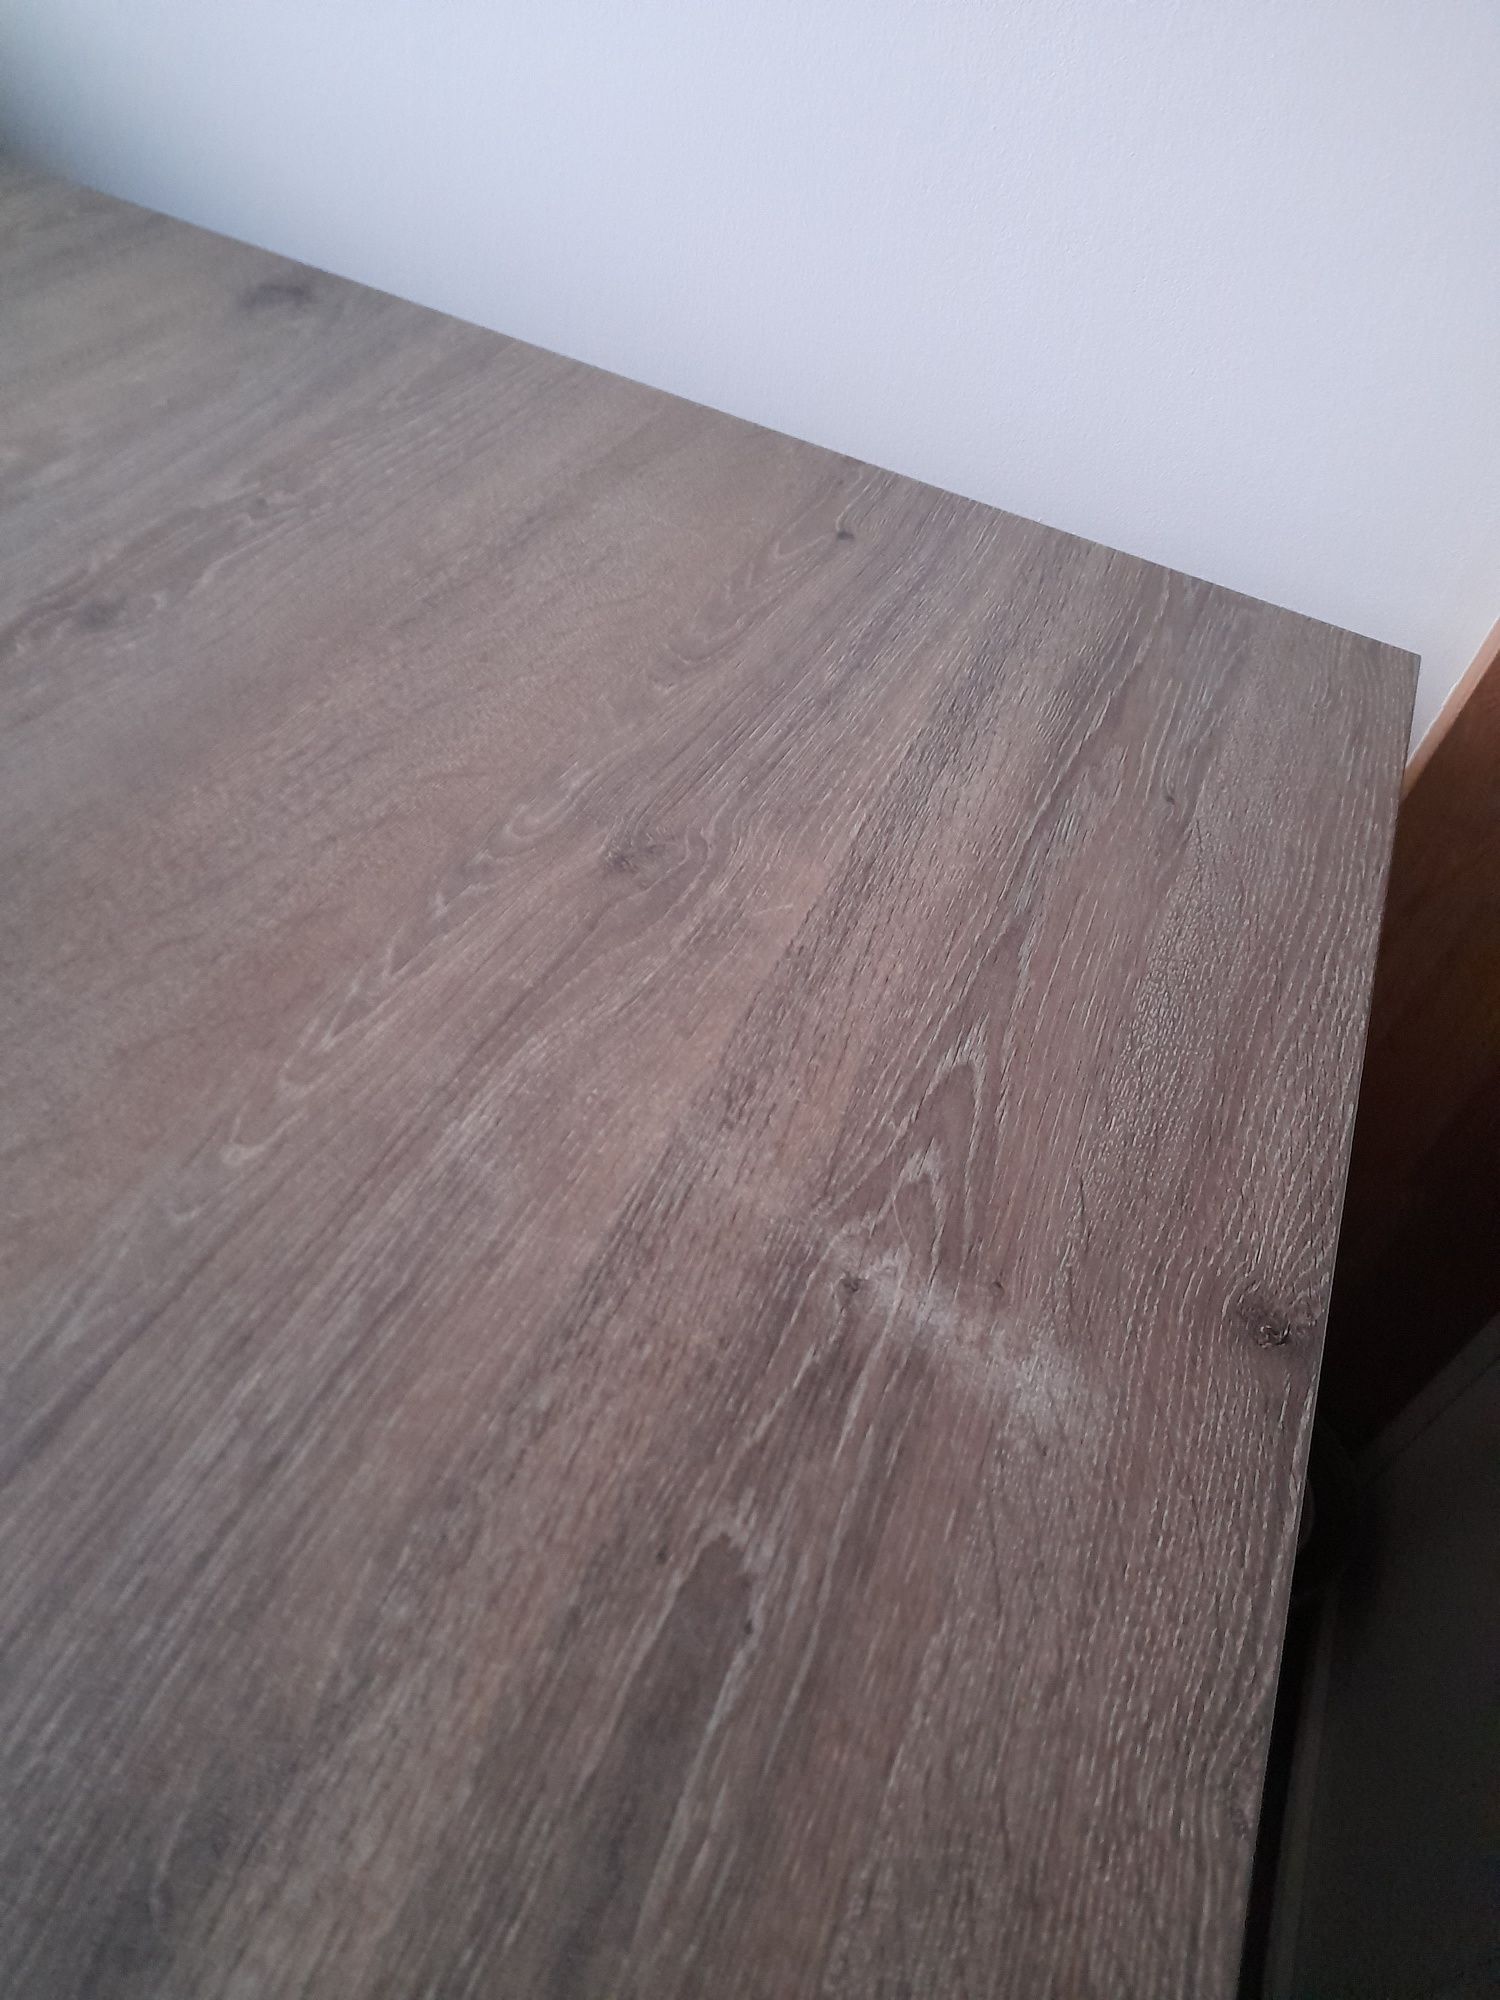 Stół jadalniany/kuchenny imitacja drewna